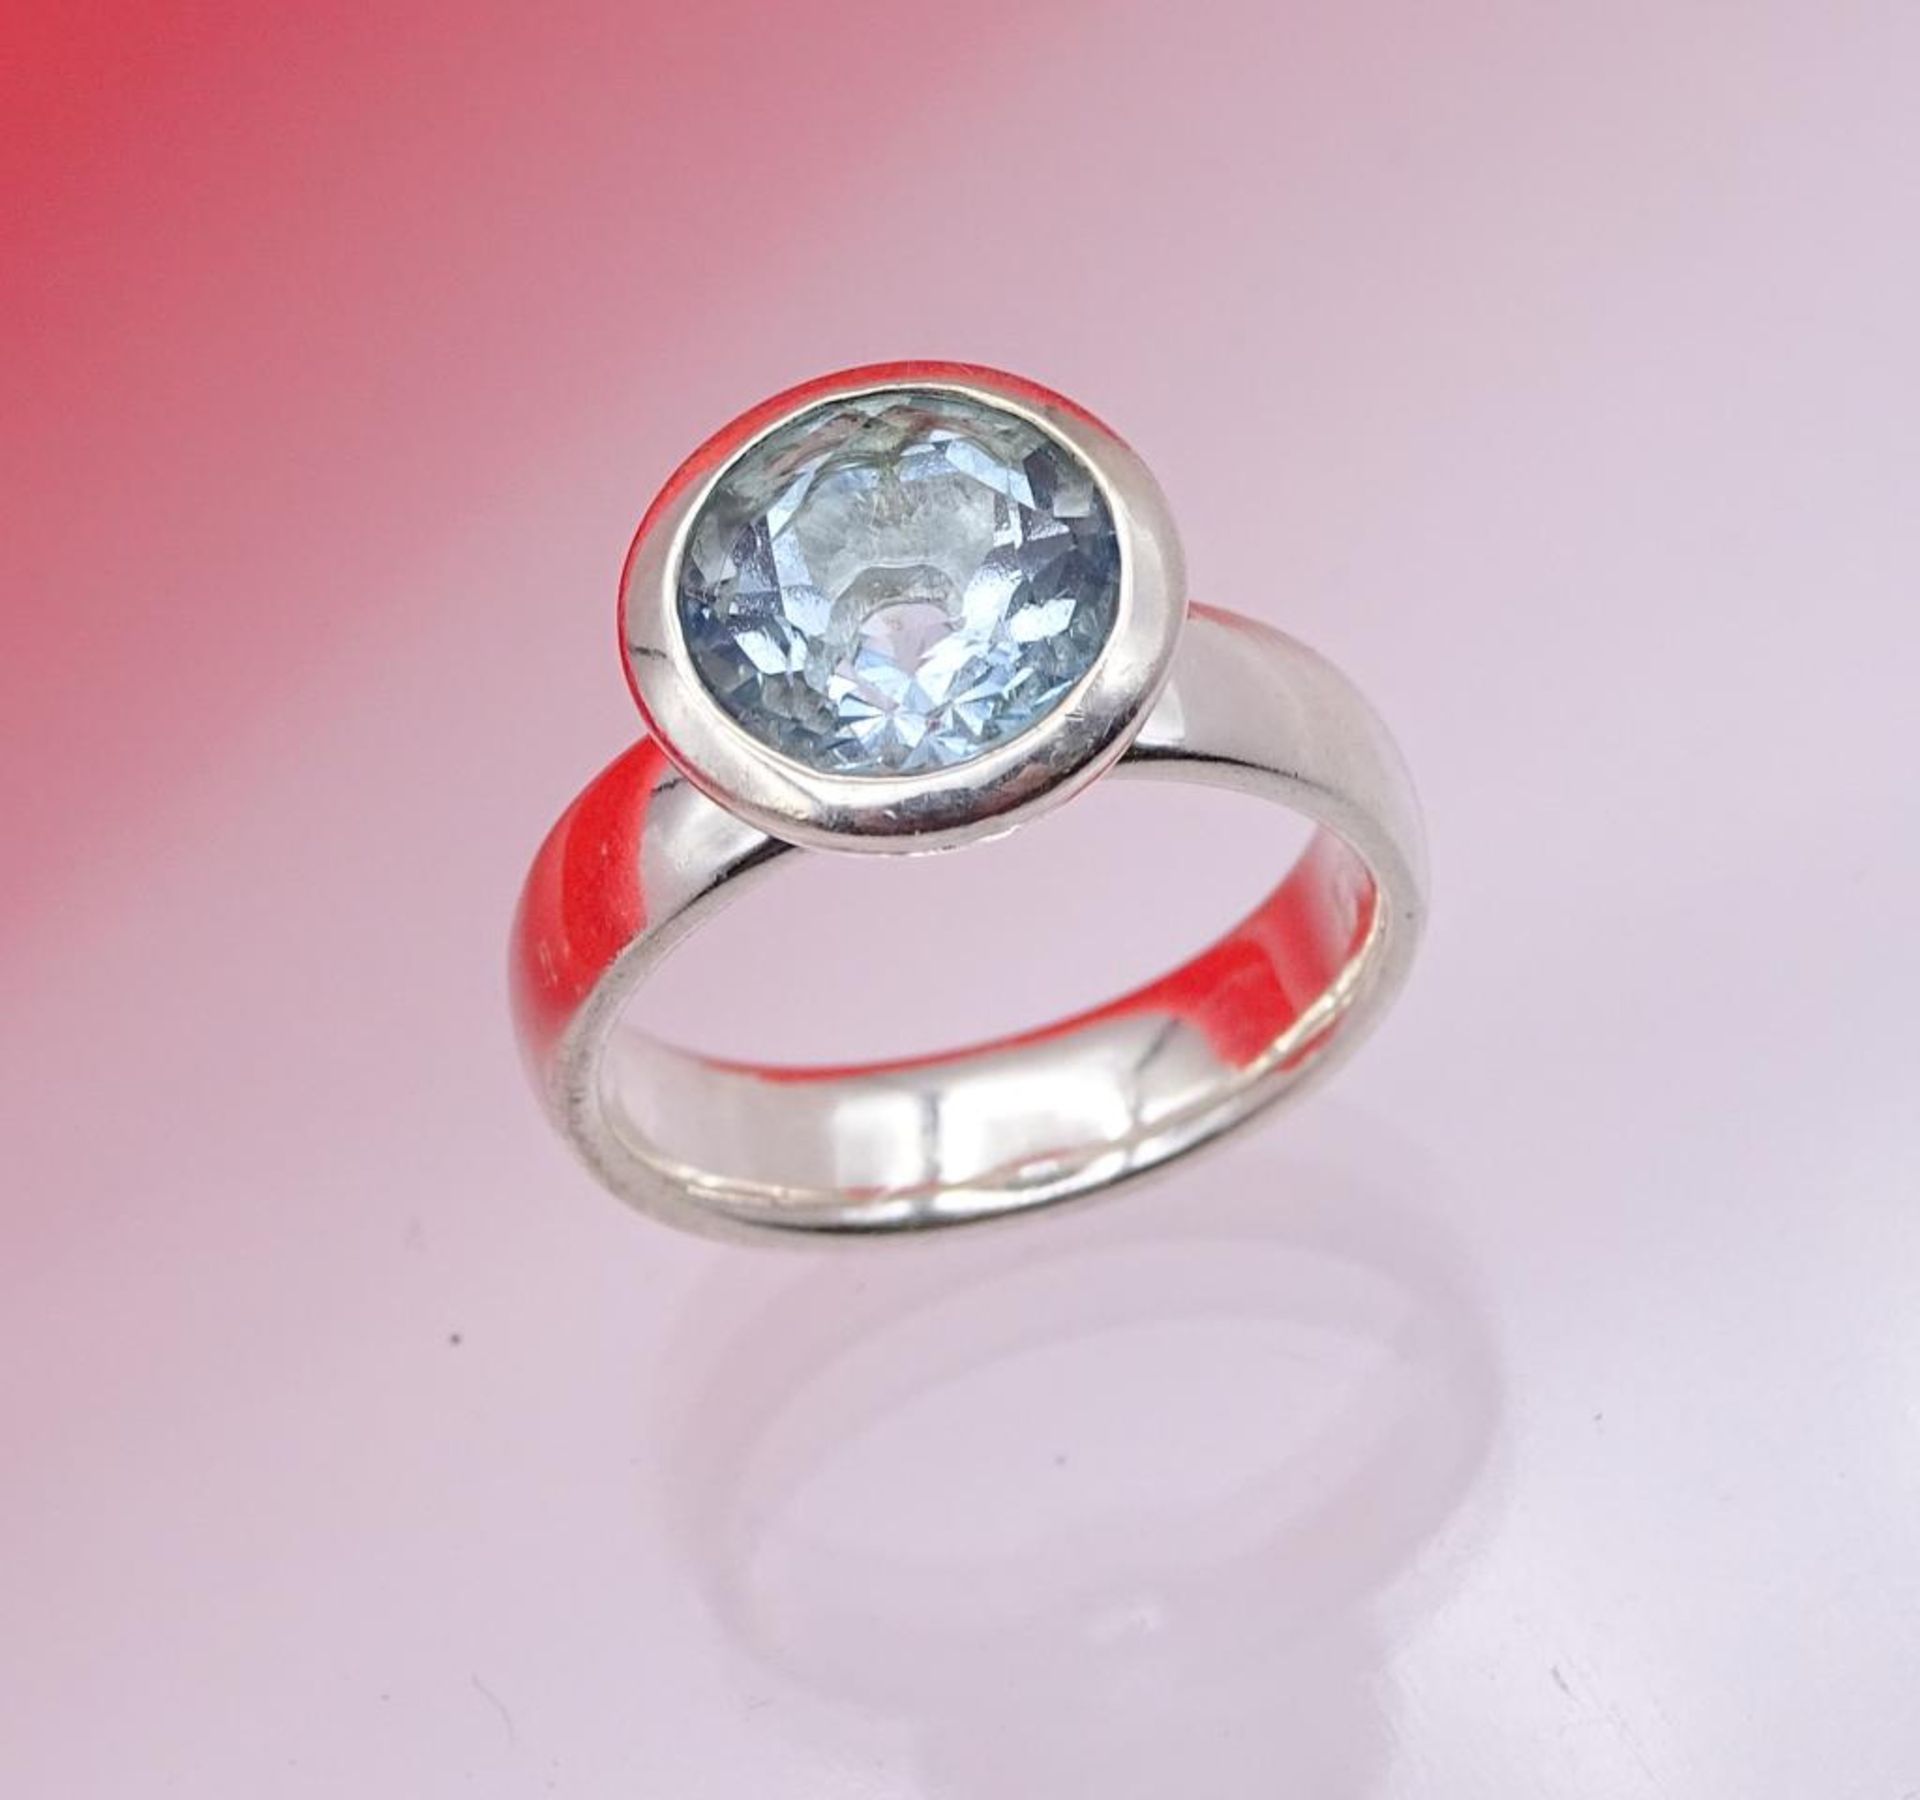 925er Silber Ring mit einen runden facettierten hellblauen Stein,wohl Aquamarin, 7,4gr.,RG 54